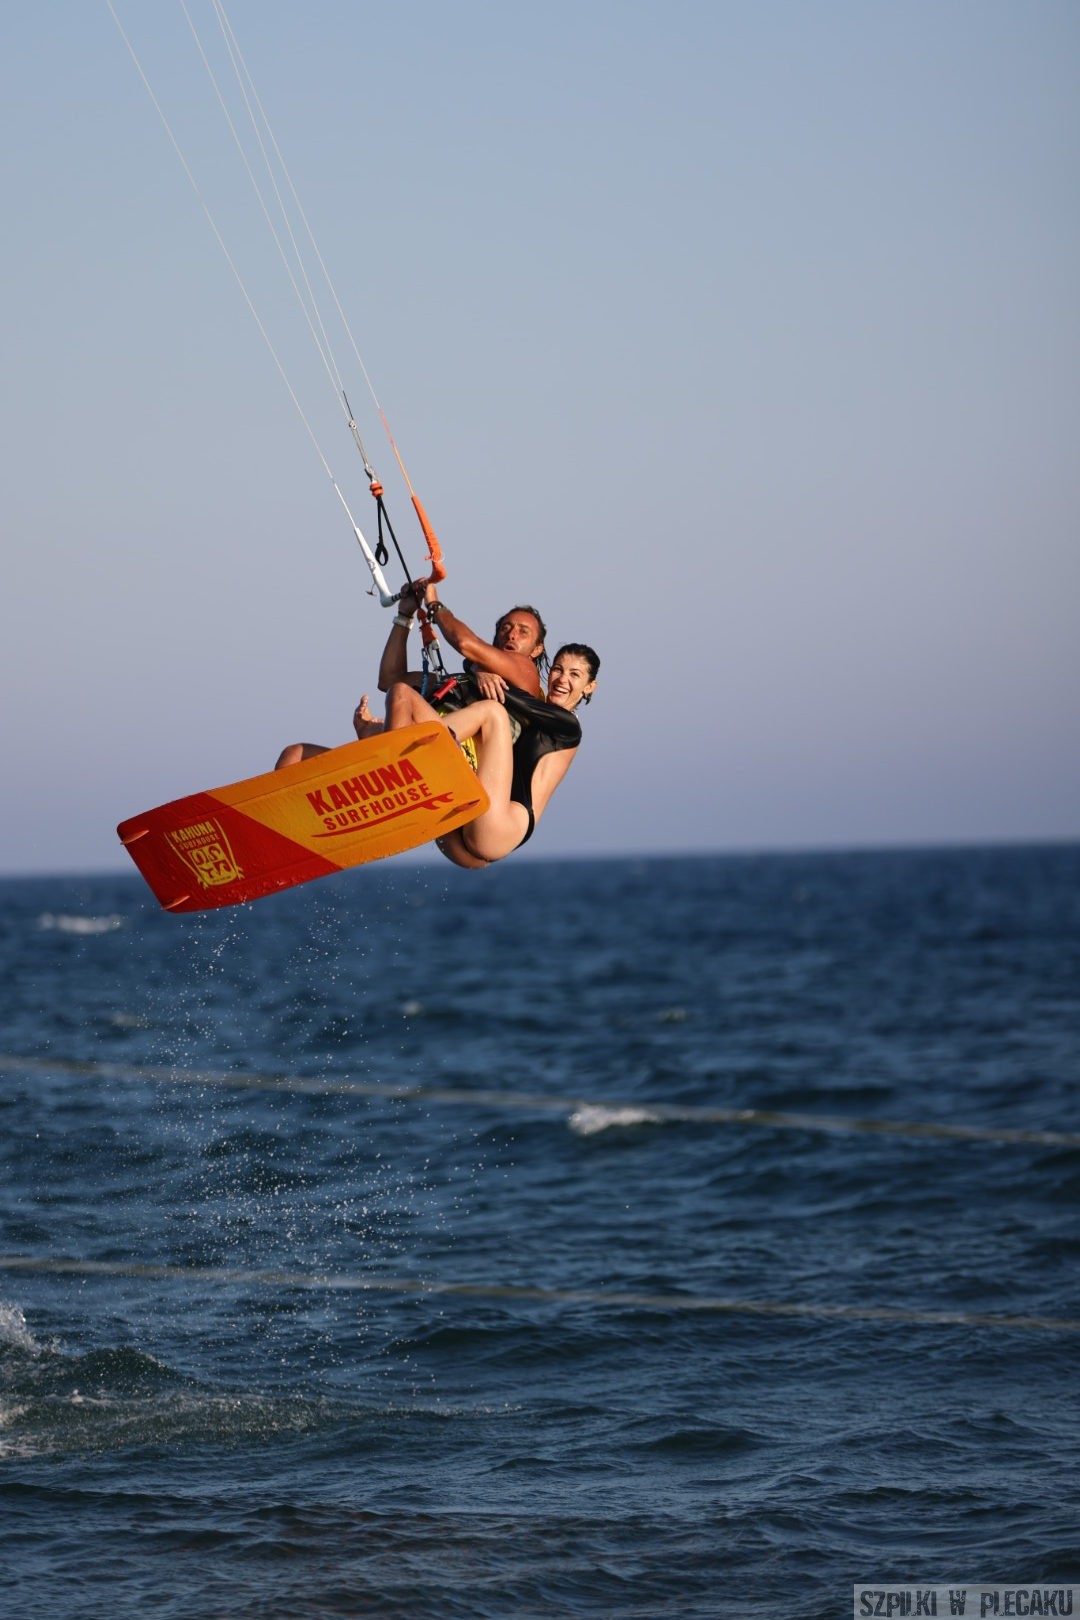 Cypr dla aktywnych - Kitesurfing - Szpilki w plecaku - Ewa Chojnowska - Lesiak